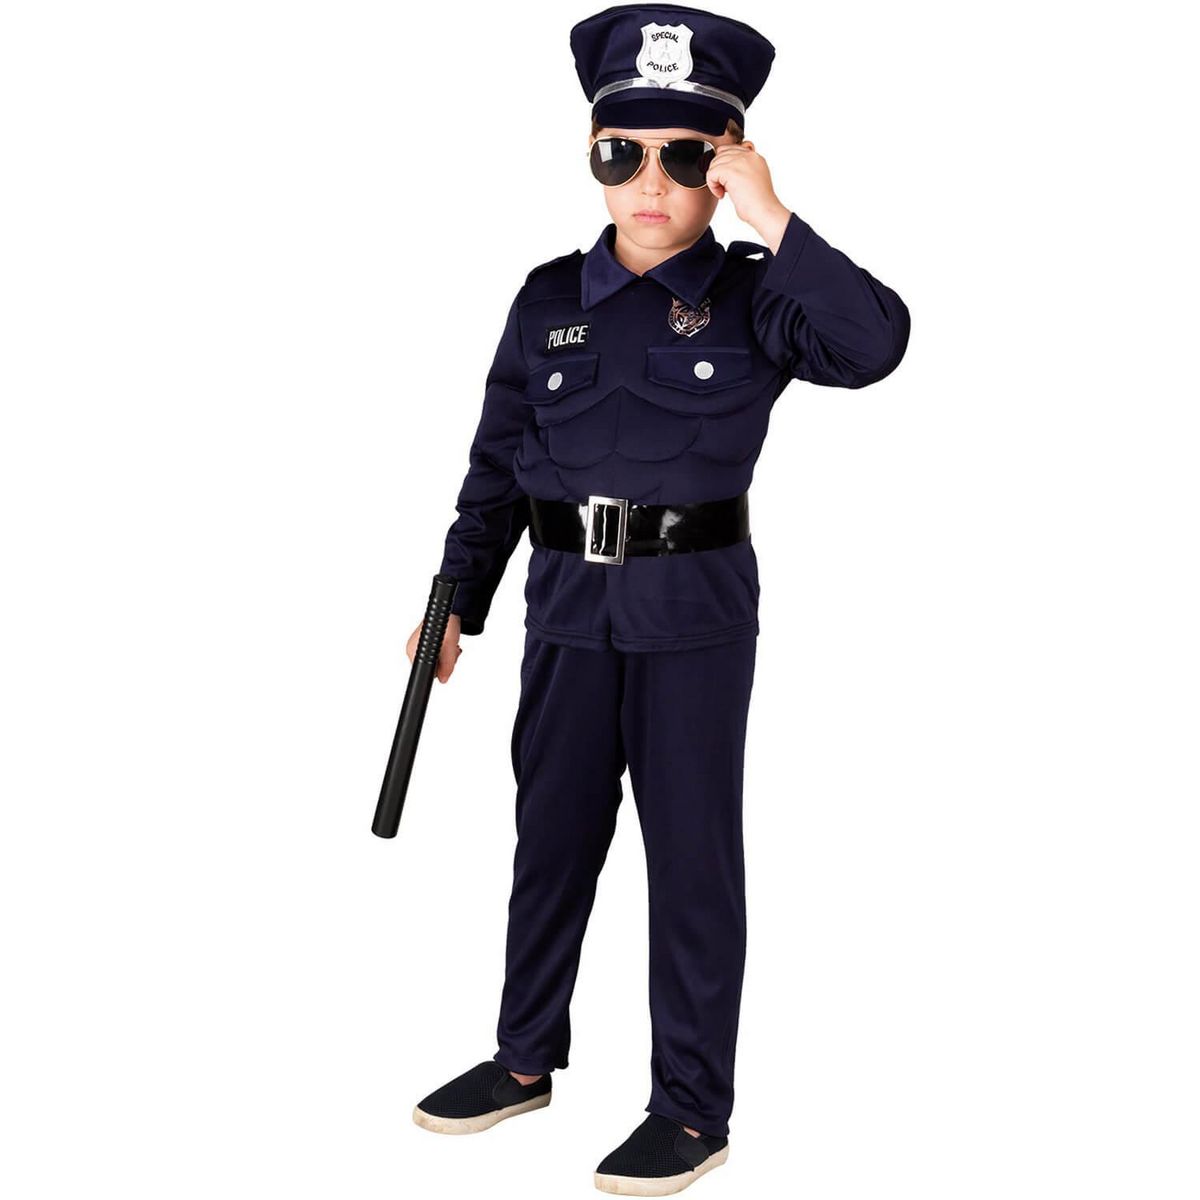 Déguisements de policiers et accessoires pas chers sur Deguisetoi